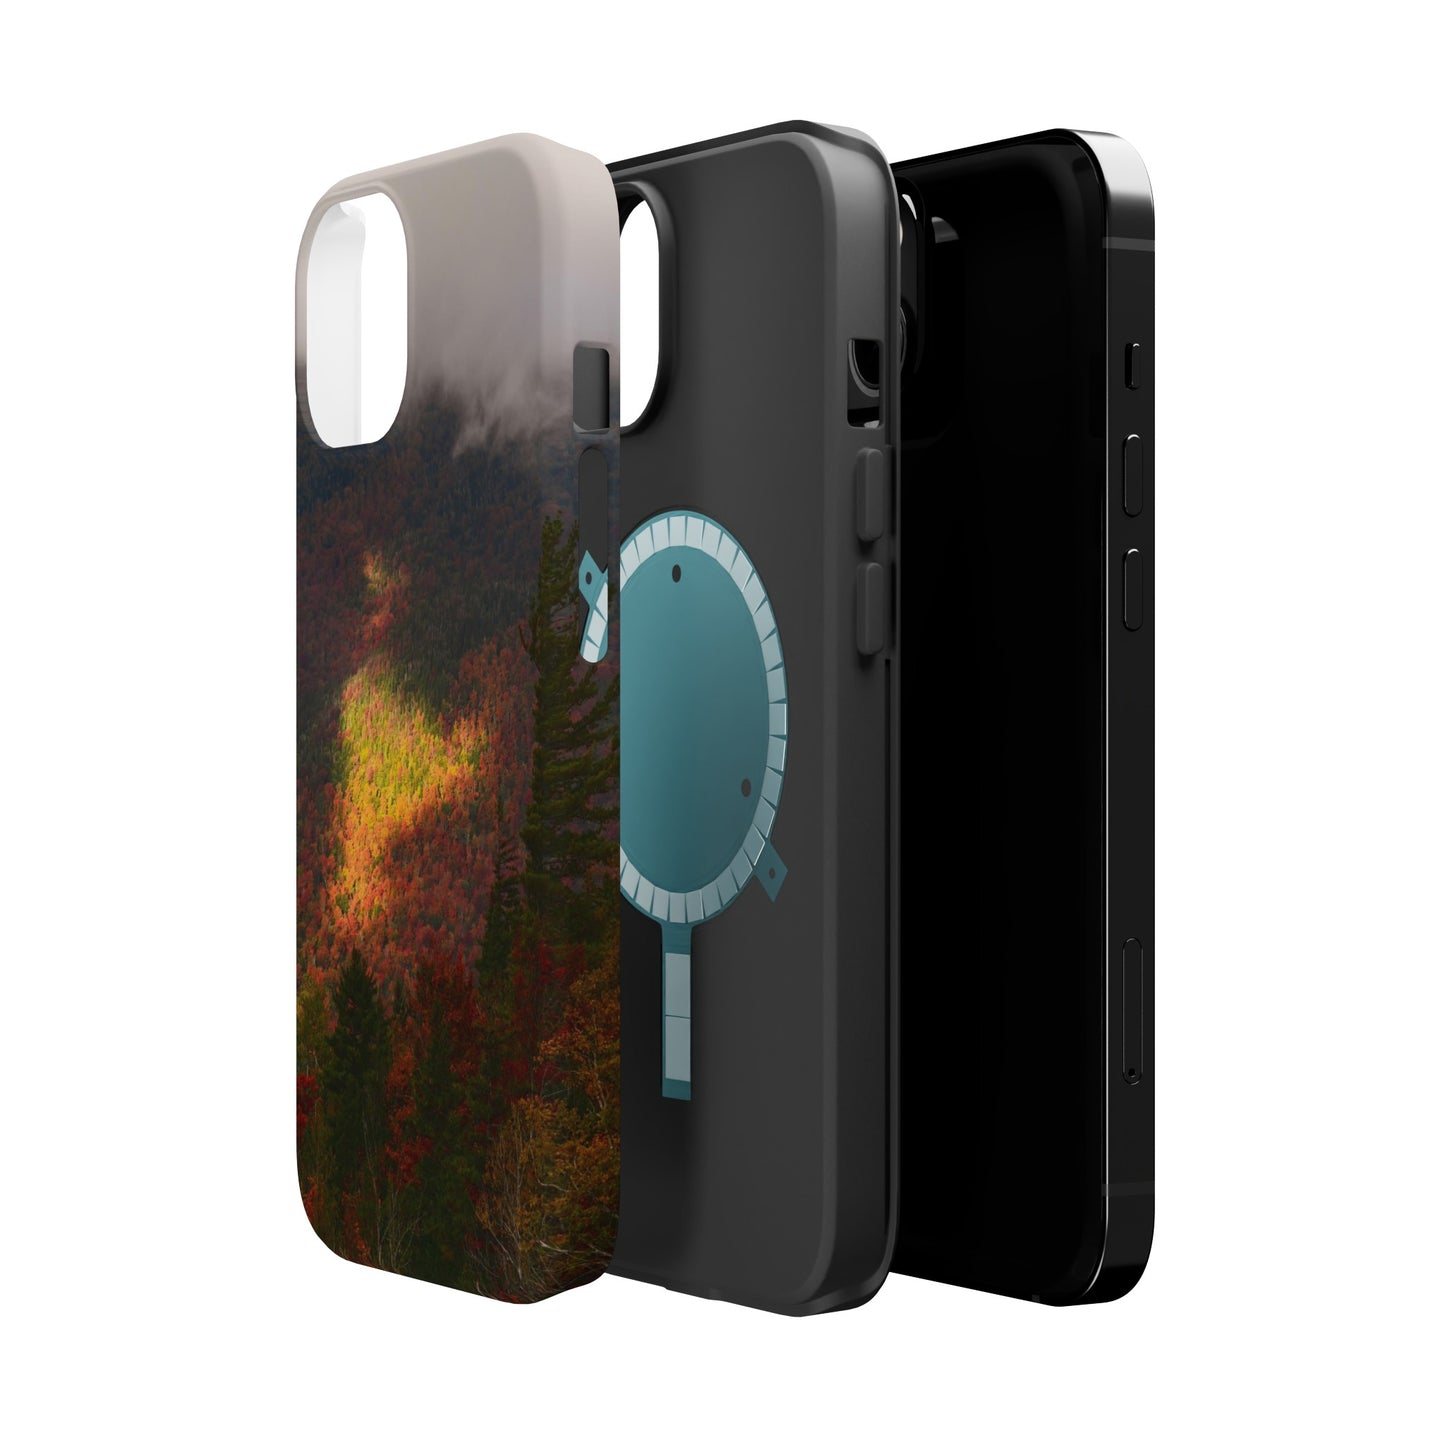 MagSafe Impact Resistant Phone Case - Adirondack Fall Fog & Foliage